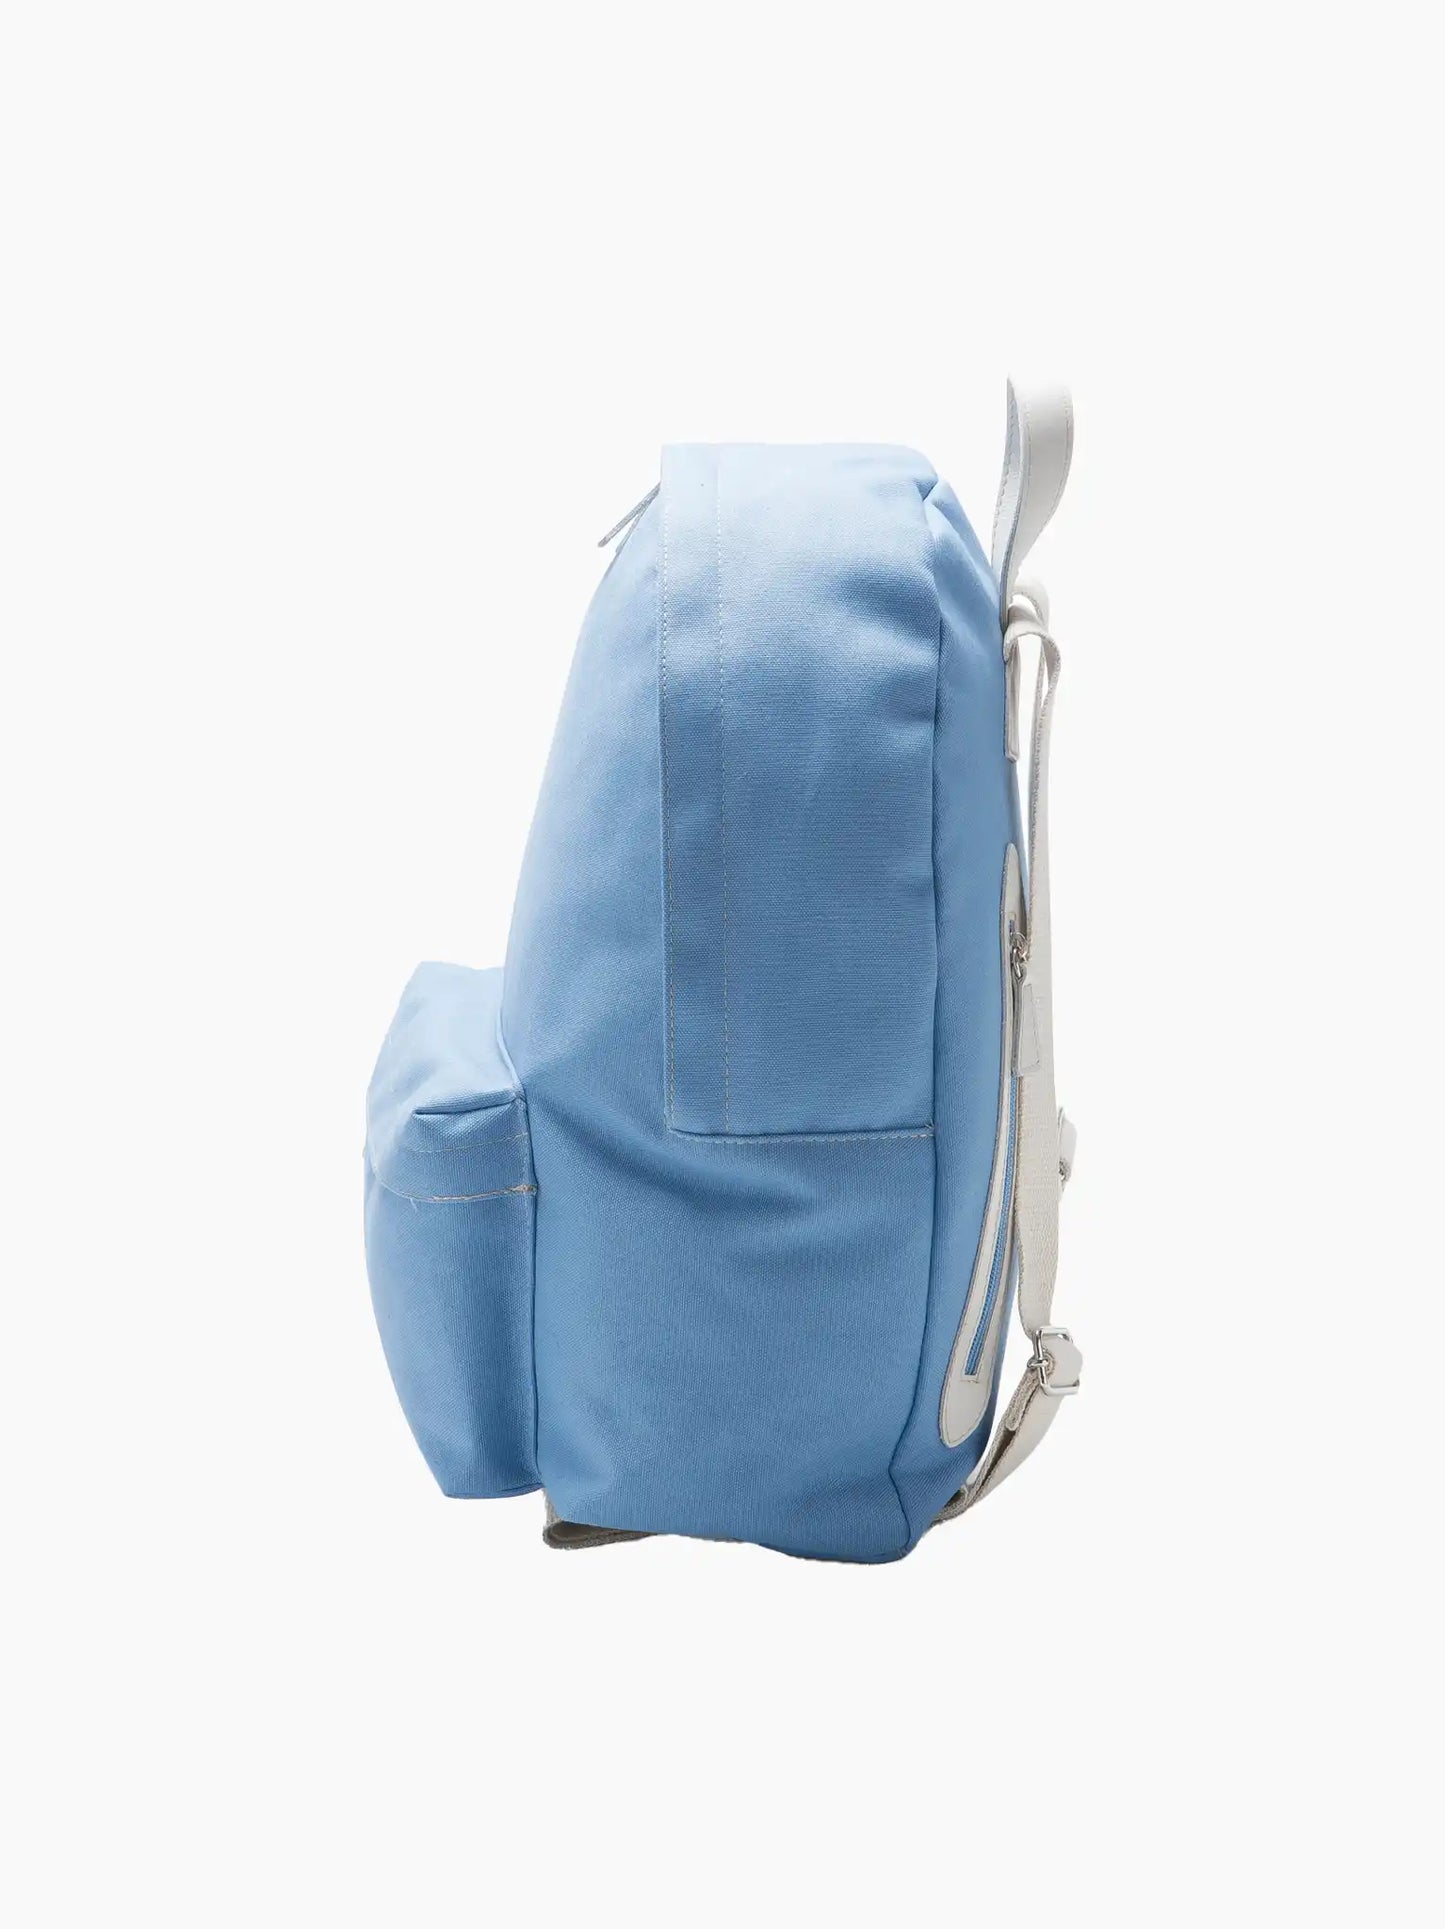 Personalised Blue Backpack